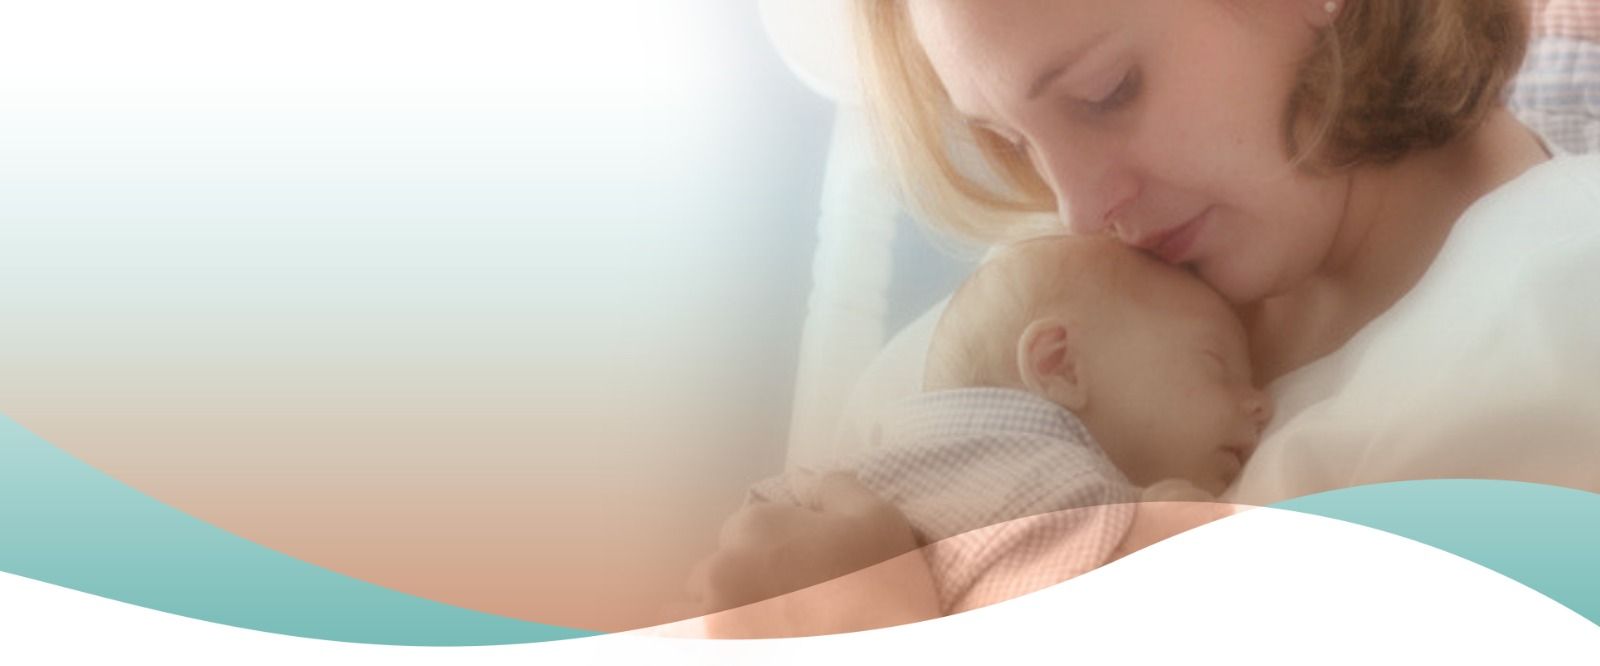 Ferticlin - Ajudamos você a realizar o sonho da maternidade